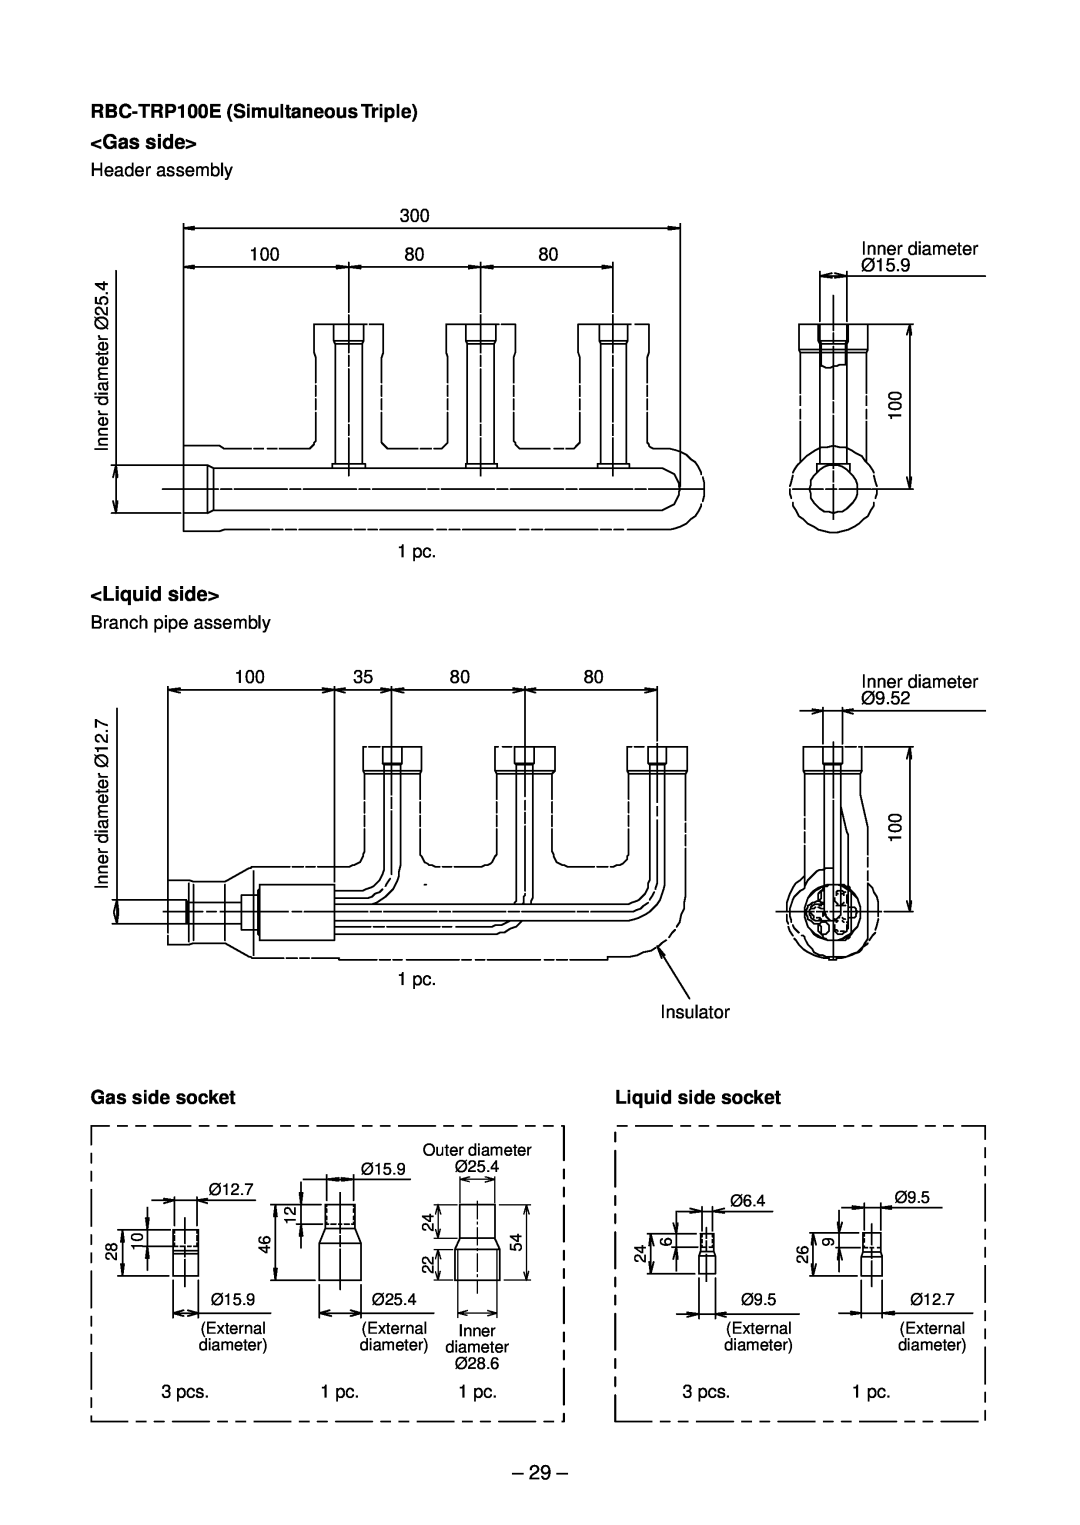 Toshiba RAV-SM2804AT7Z <Gas side>, <Liquid side>, RBC-TRP100ESimultaneous Triple, Gas side socket, Liquid side socket 